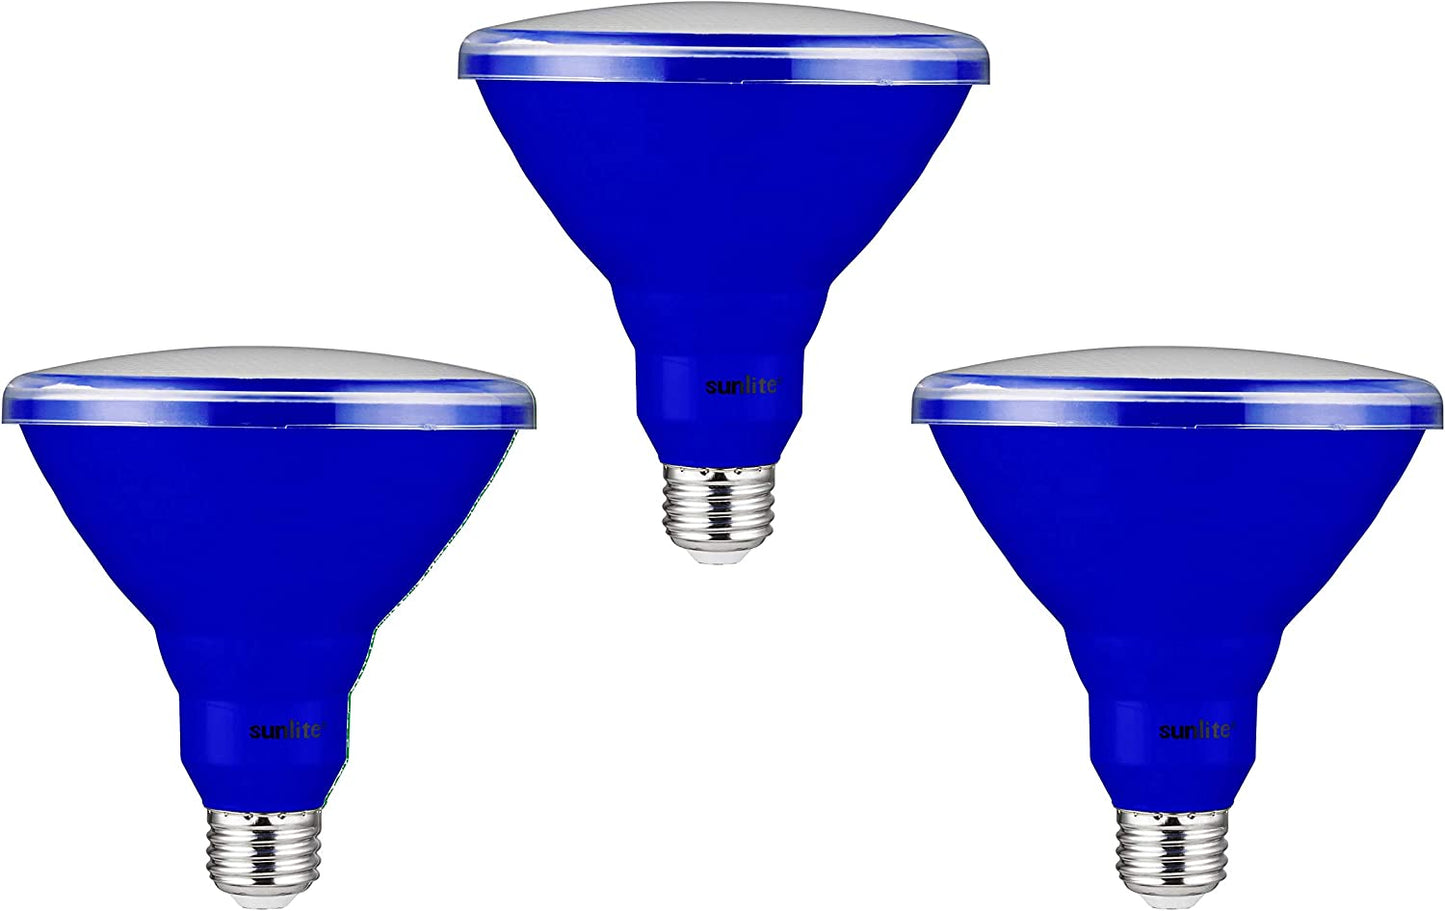 Sunlite 81477 LED PAR38 Colored Recessed Light Bulb, 15 watt (75W Equivalent), Medium (E26) Base, Floodlight, ETL Listed, Blue, Pack of 3